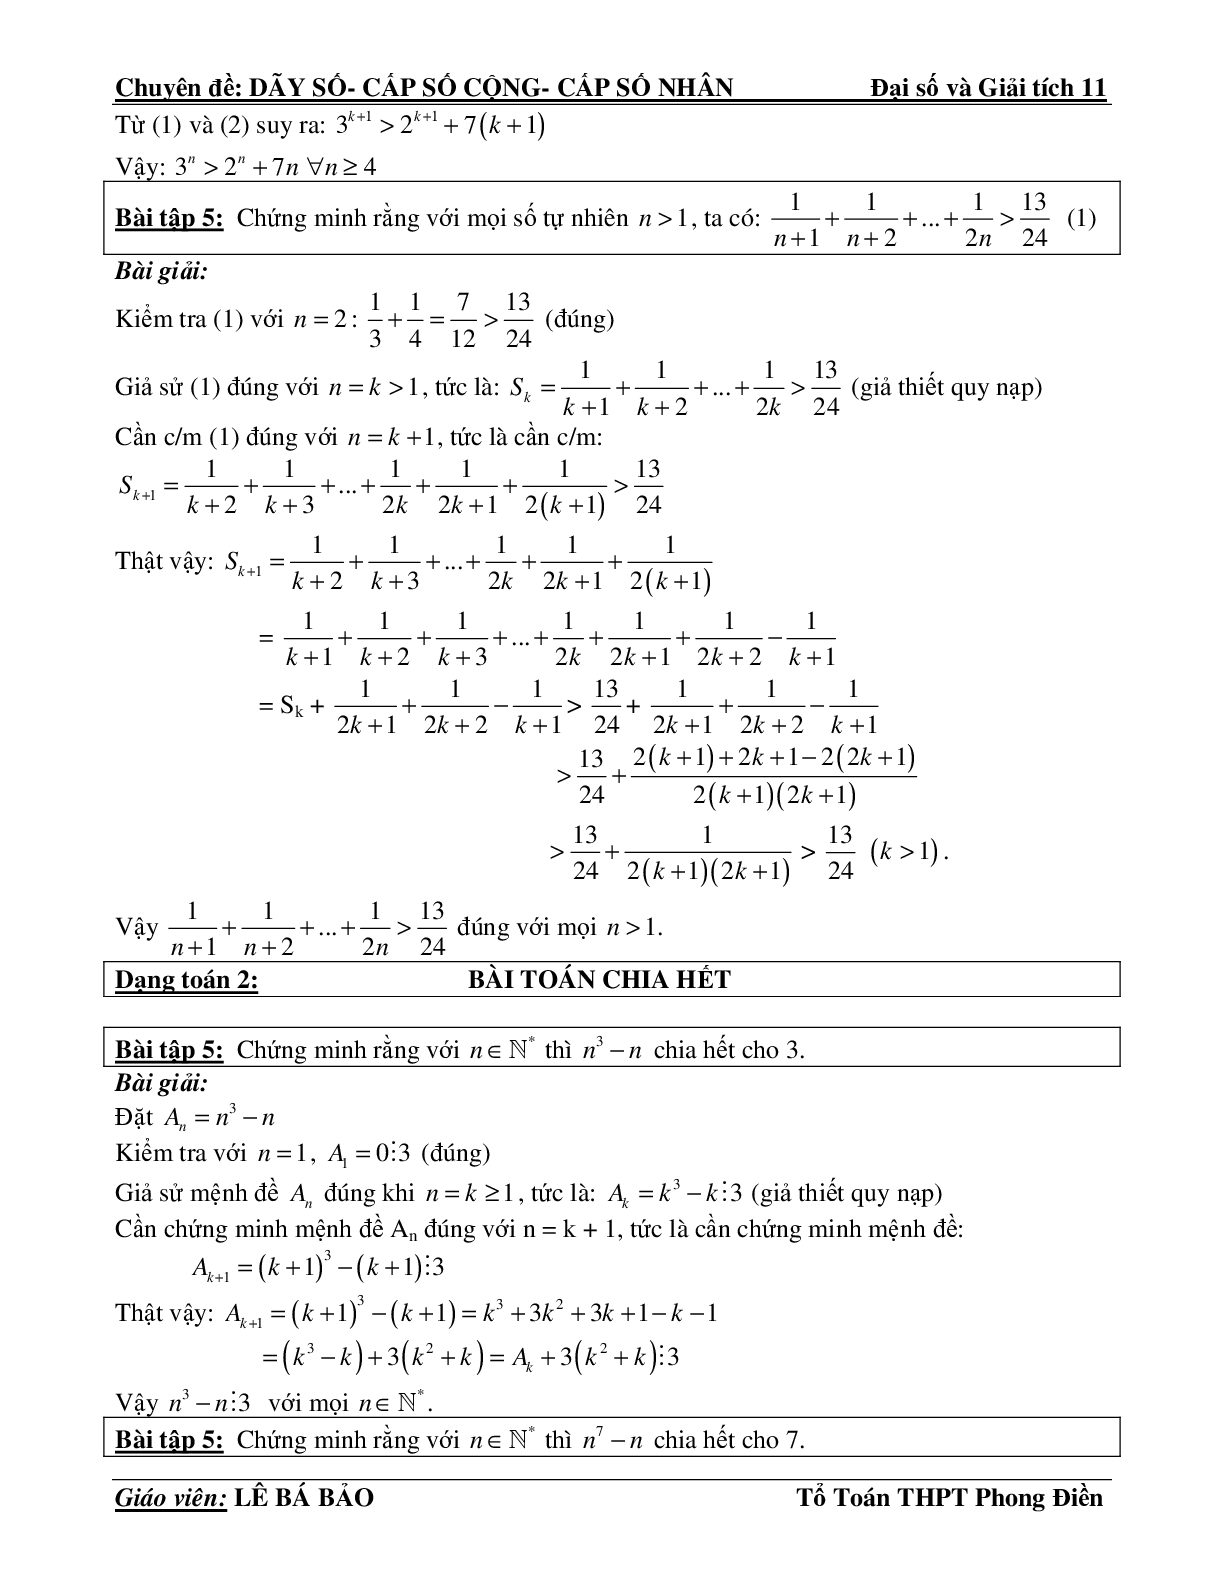 Bài tập phương pháp quy nạp toán học (trang 3)